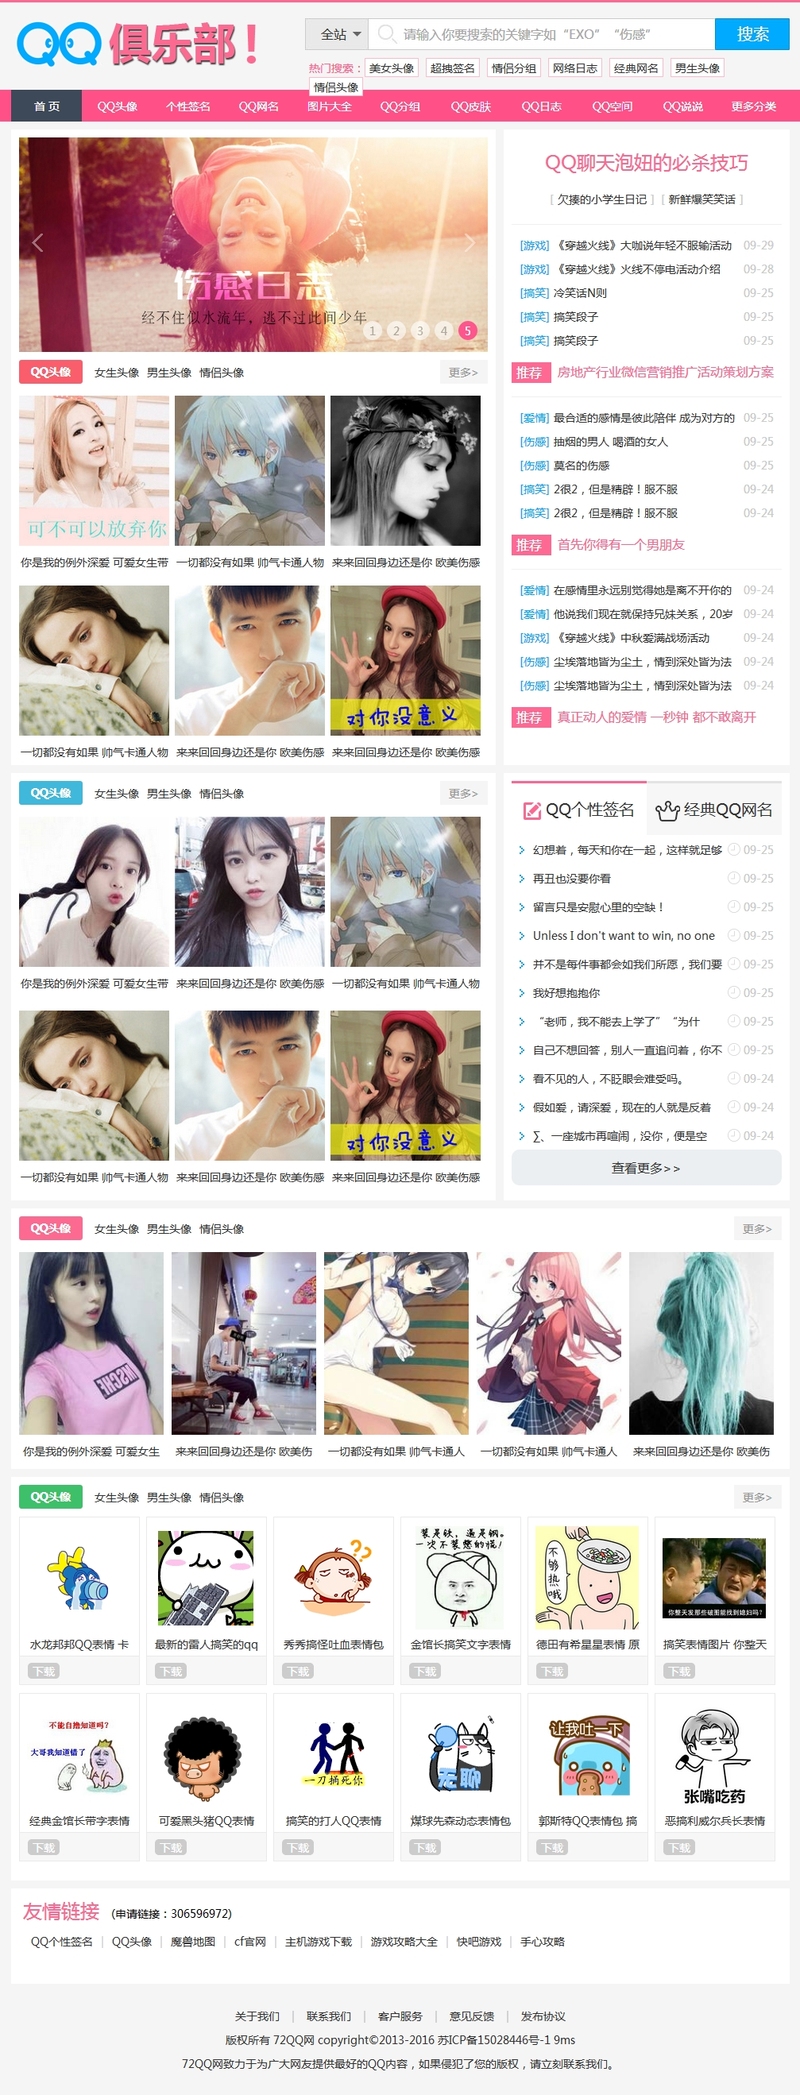 QQ俱乐部素材网站粉色风格的模板下载